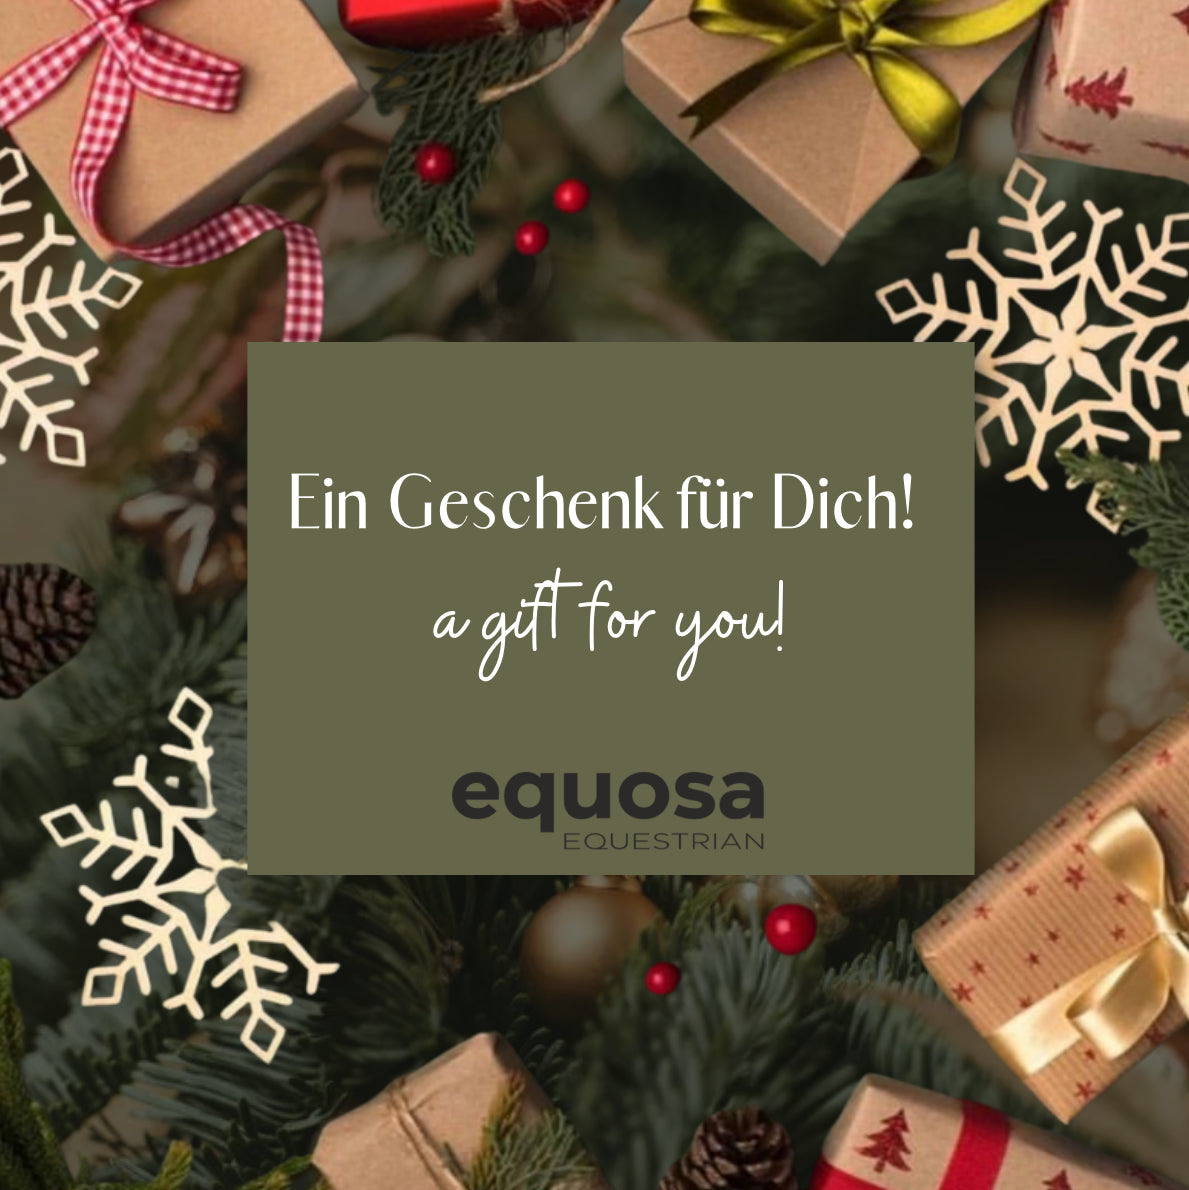 Equosa Equestrian Gift Certificate